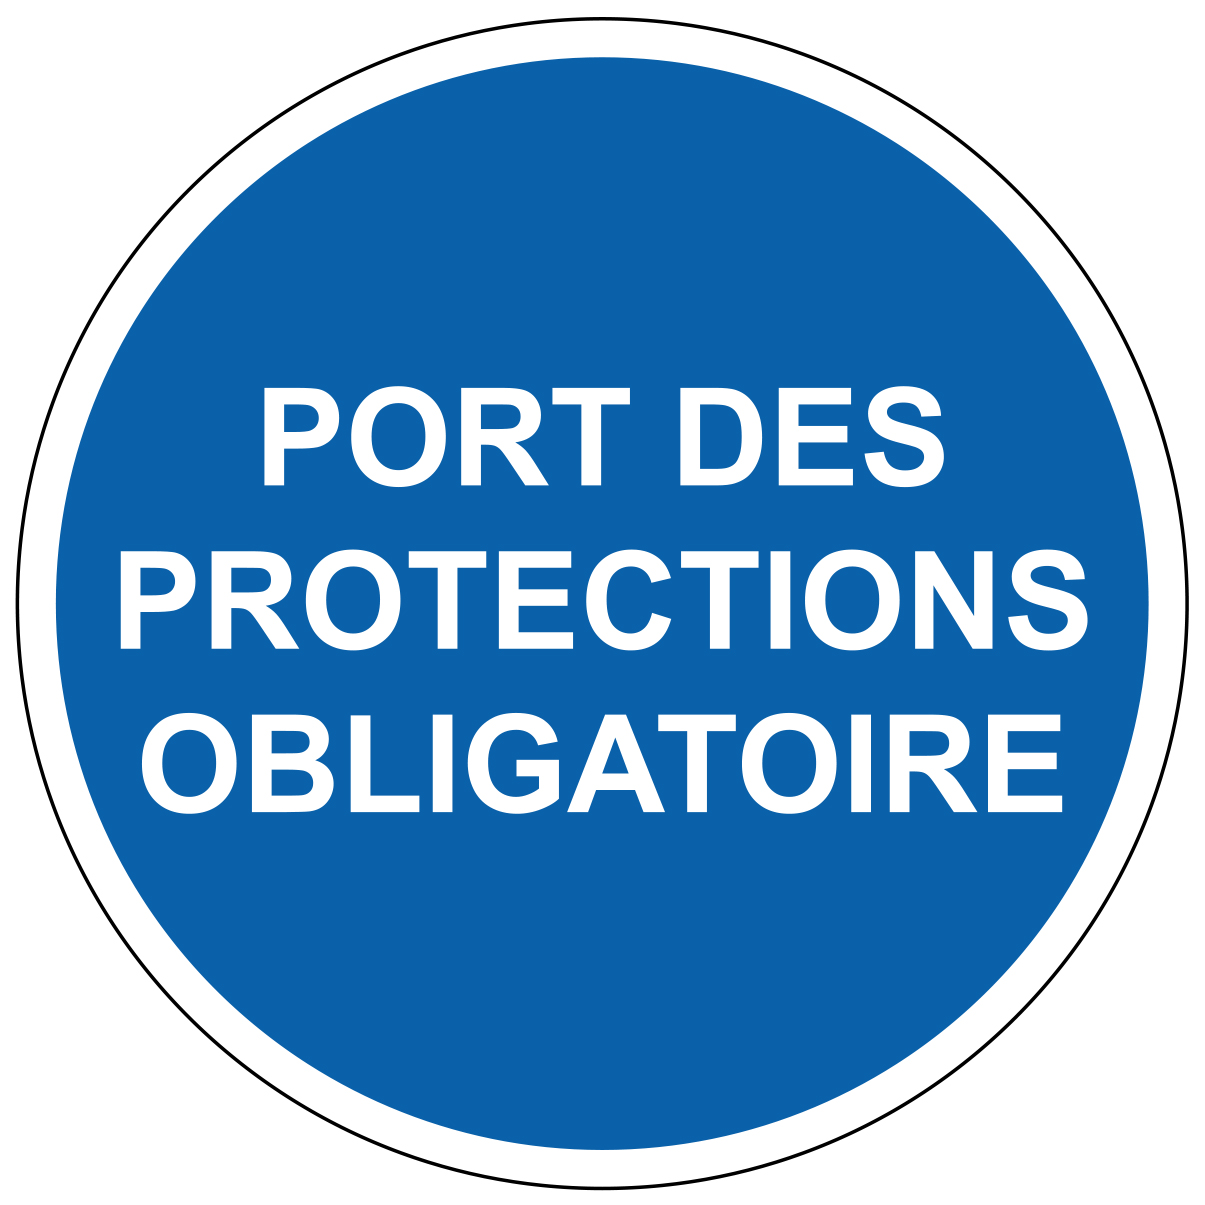 Port de protections obligatoire - M303 - étiquettes et panneaux d'obligation et de consigne